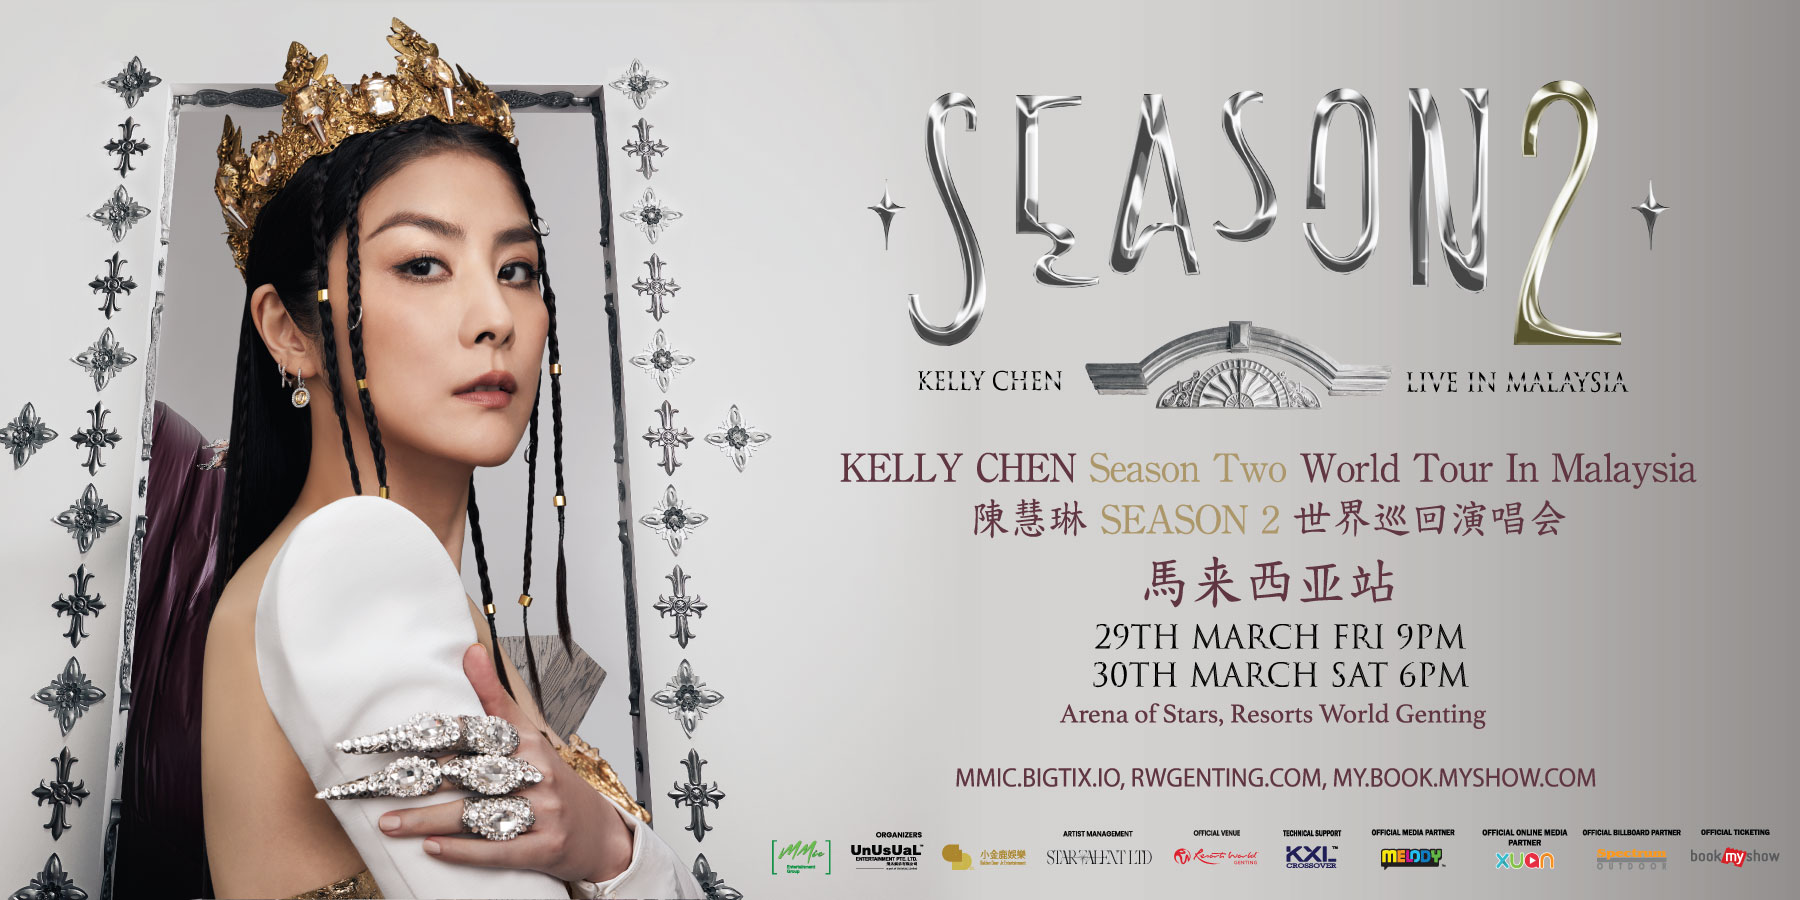 KELLY CHEN Season Two World Tour In Malaysia